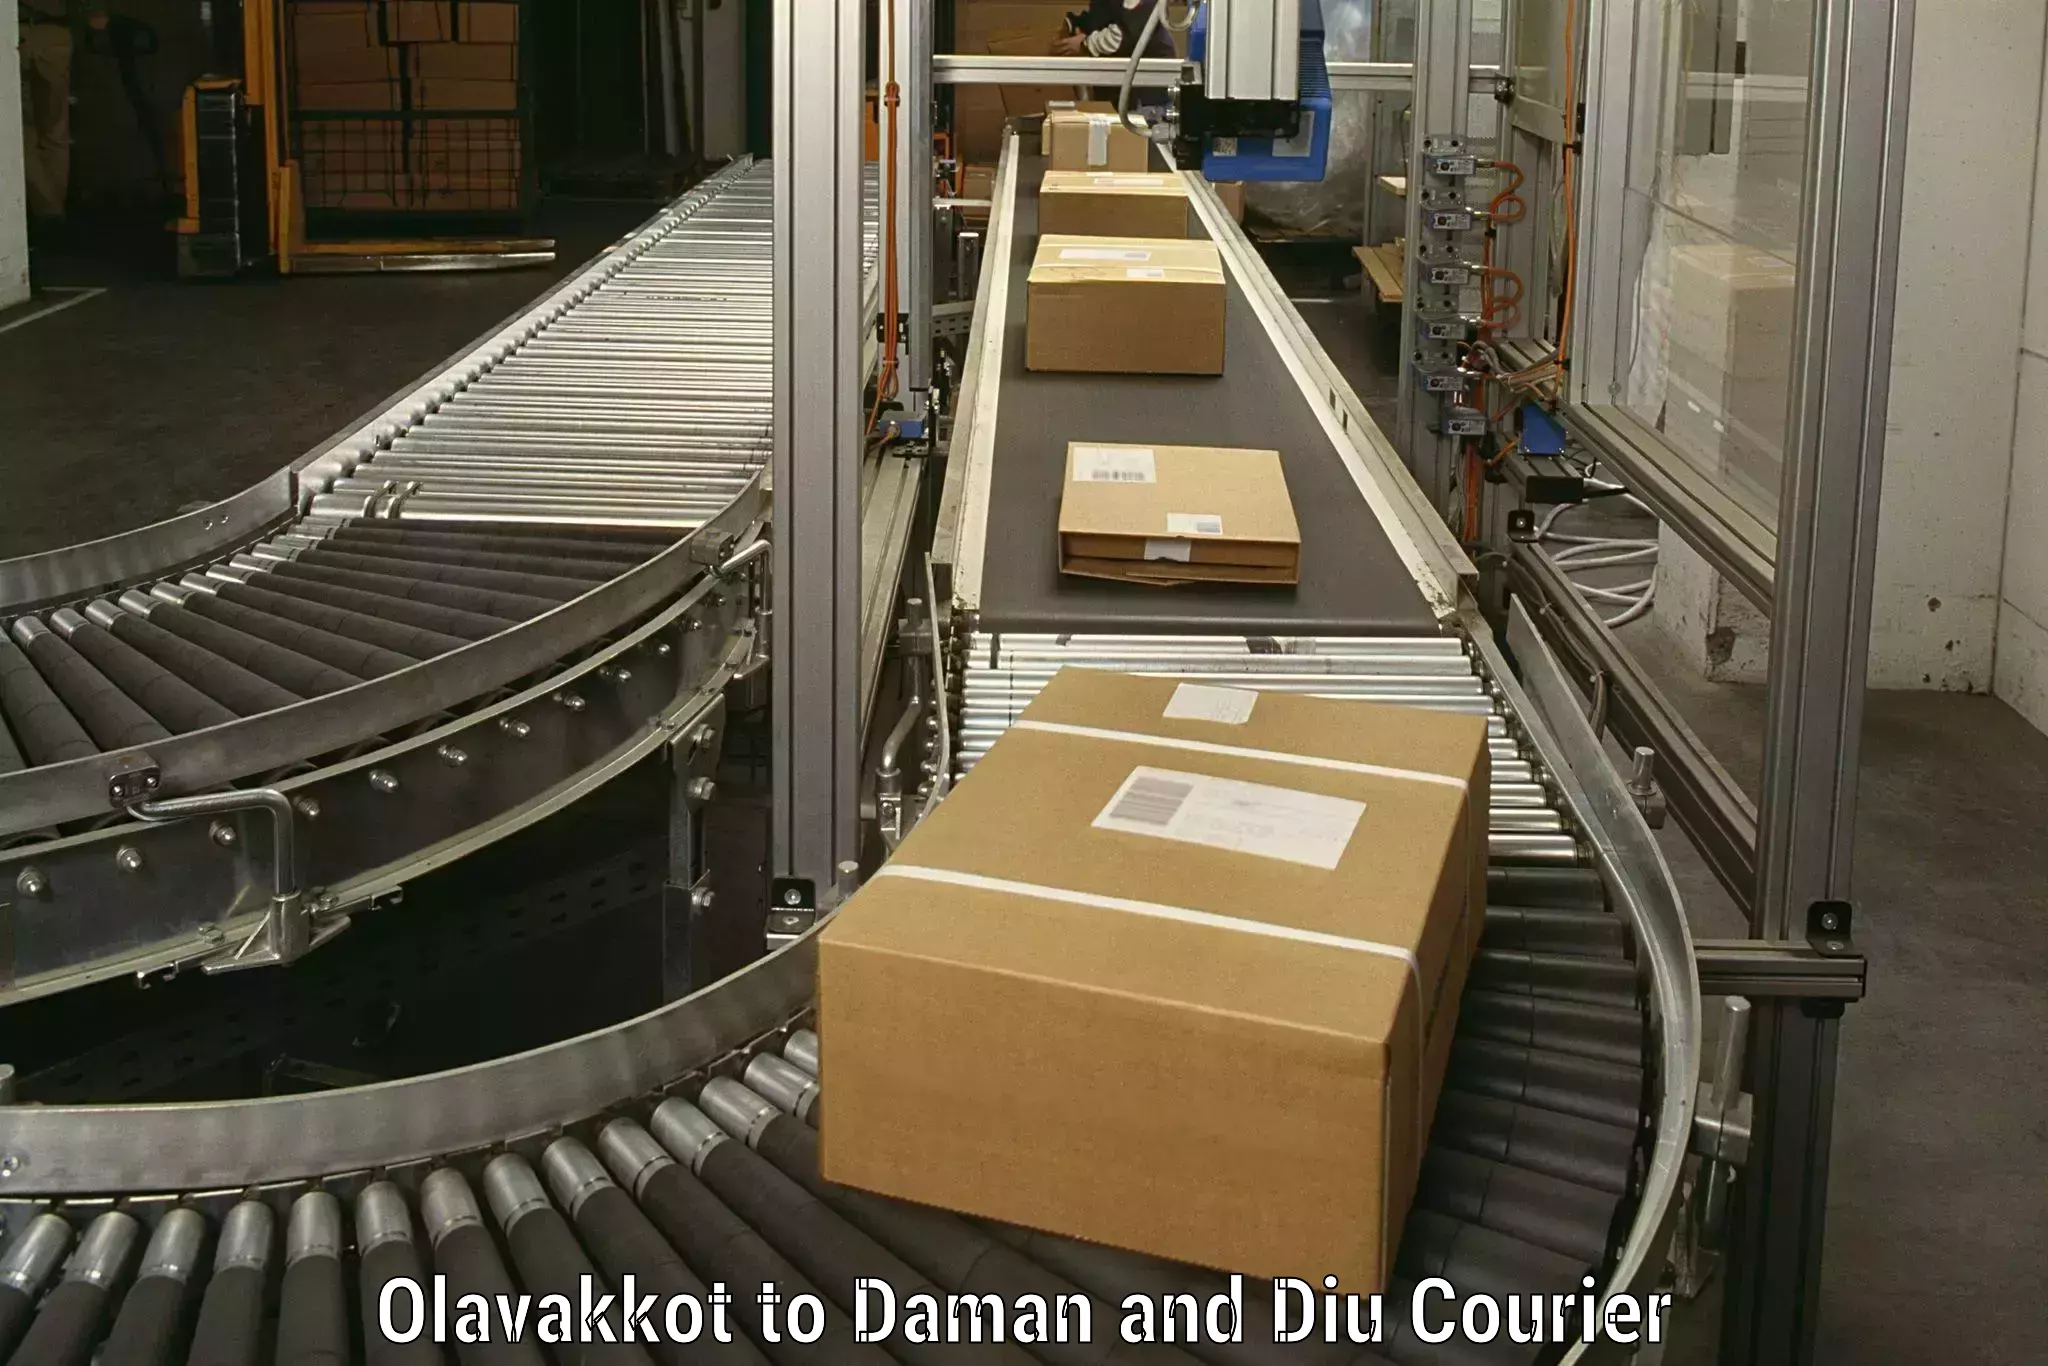 Professional moving company Olavakkot to Diu